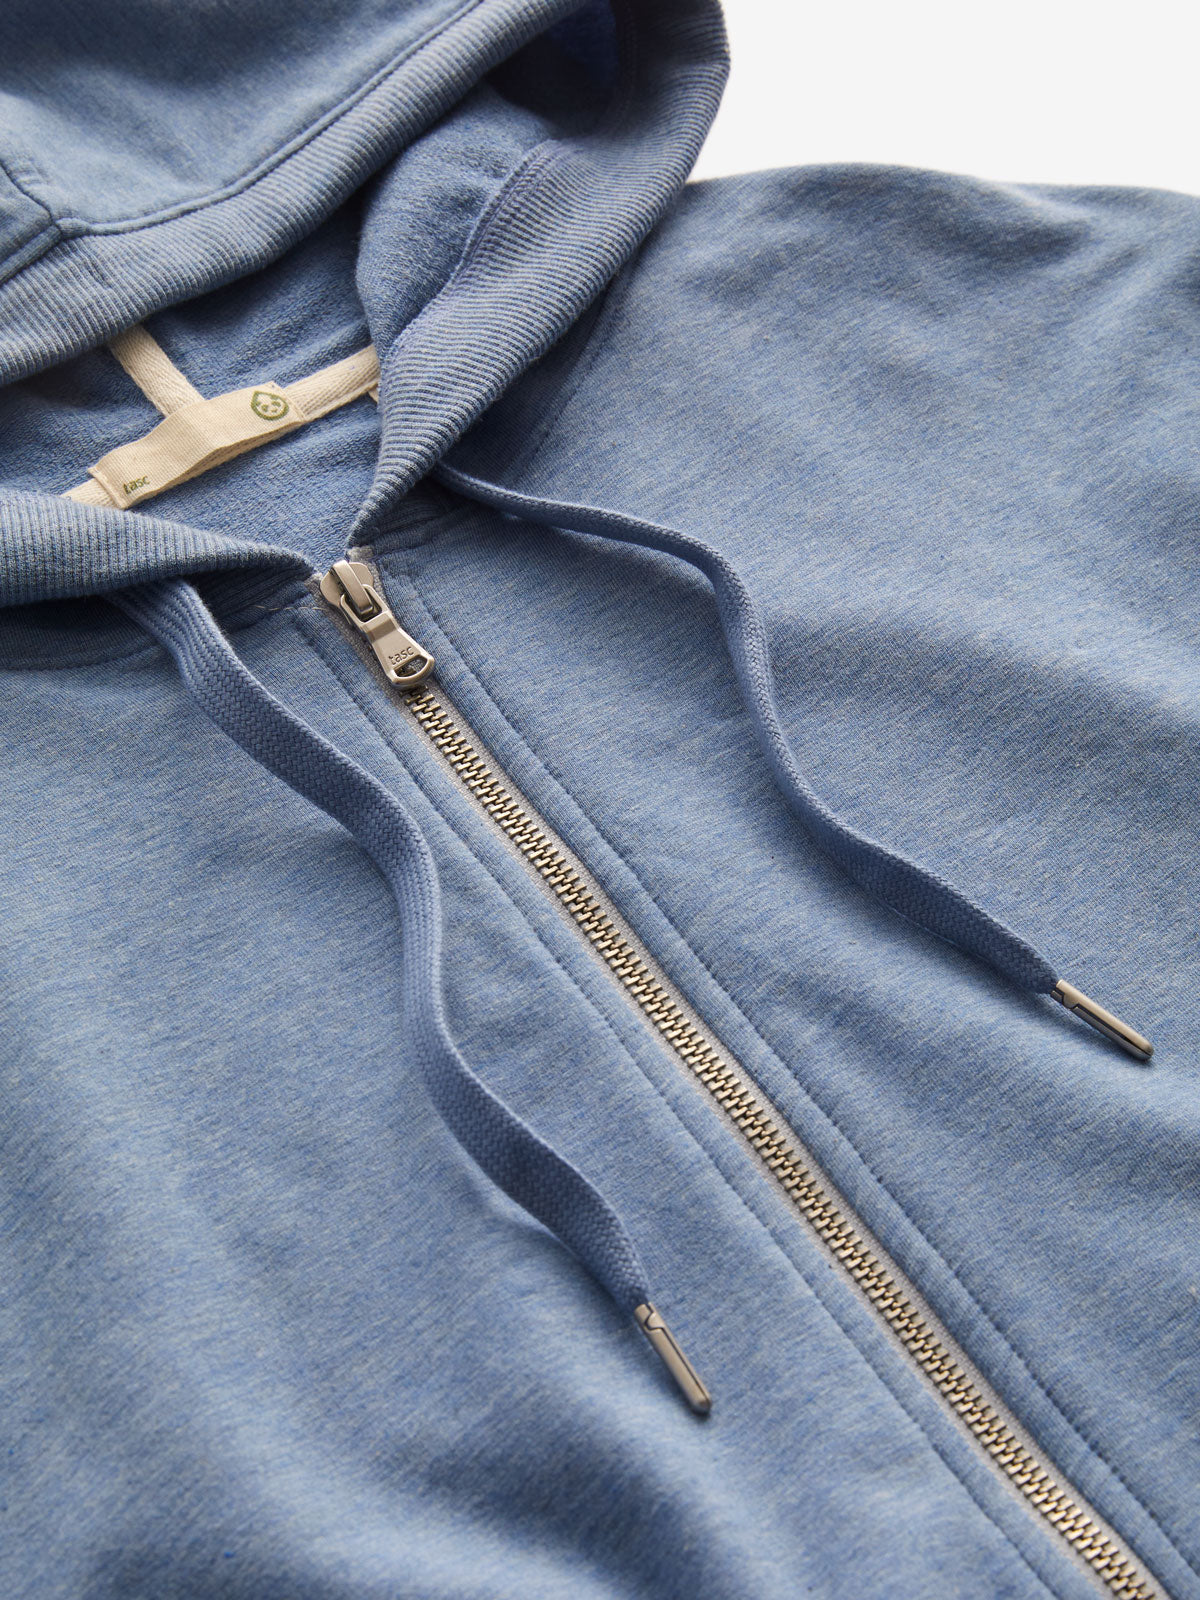 Essentials Men's Lightweight French Terry Full-Zip Hooded Sweatshirt